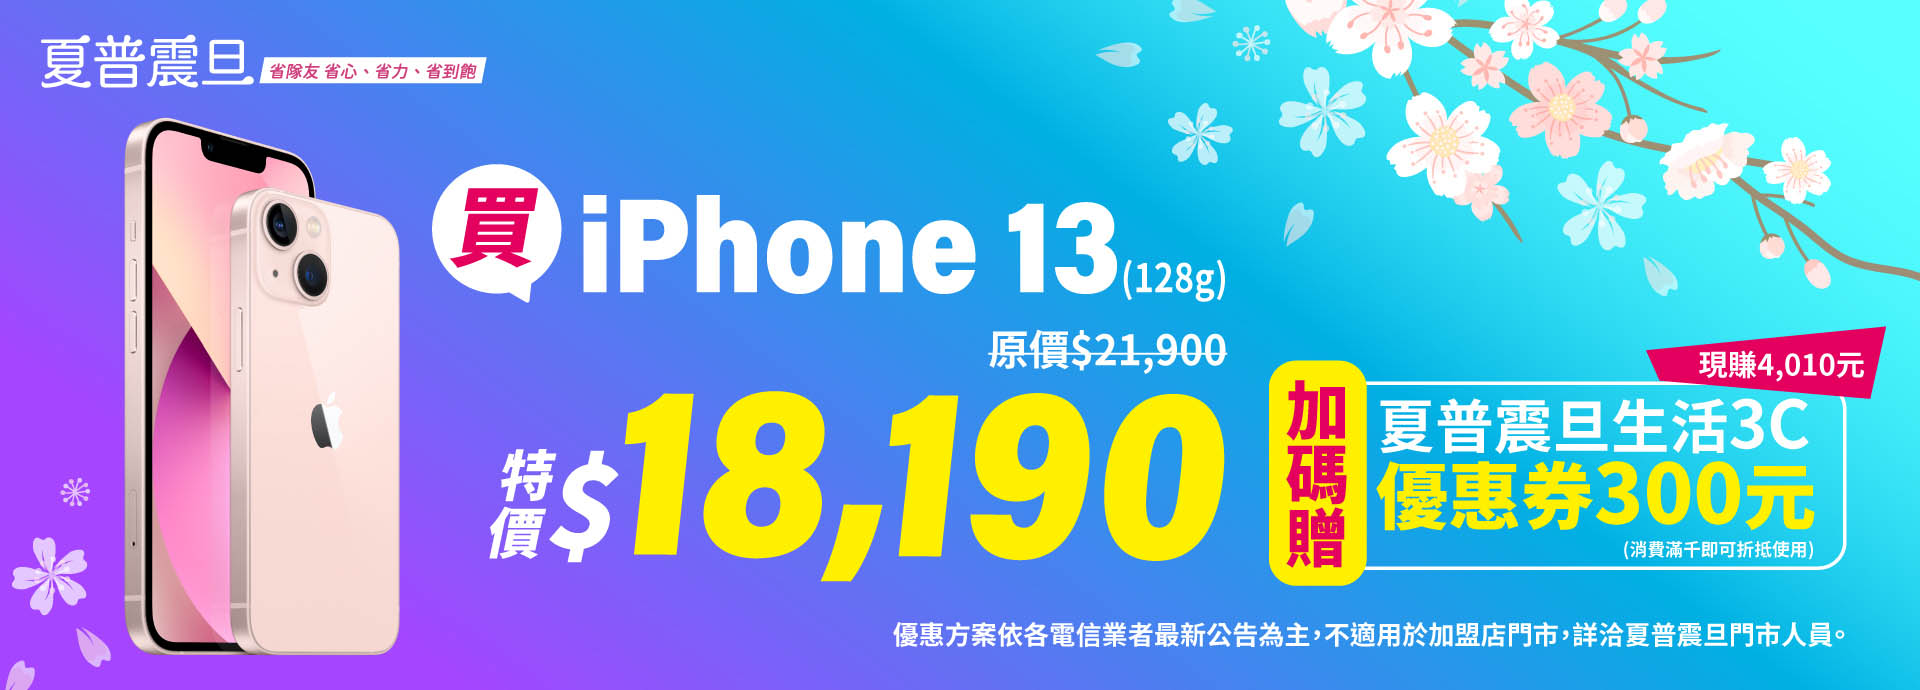 買iPhone13 ，加碼贈夏普震旦生活3C優惠券300元。